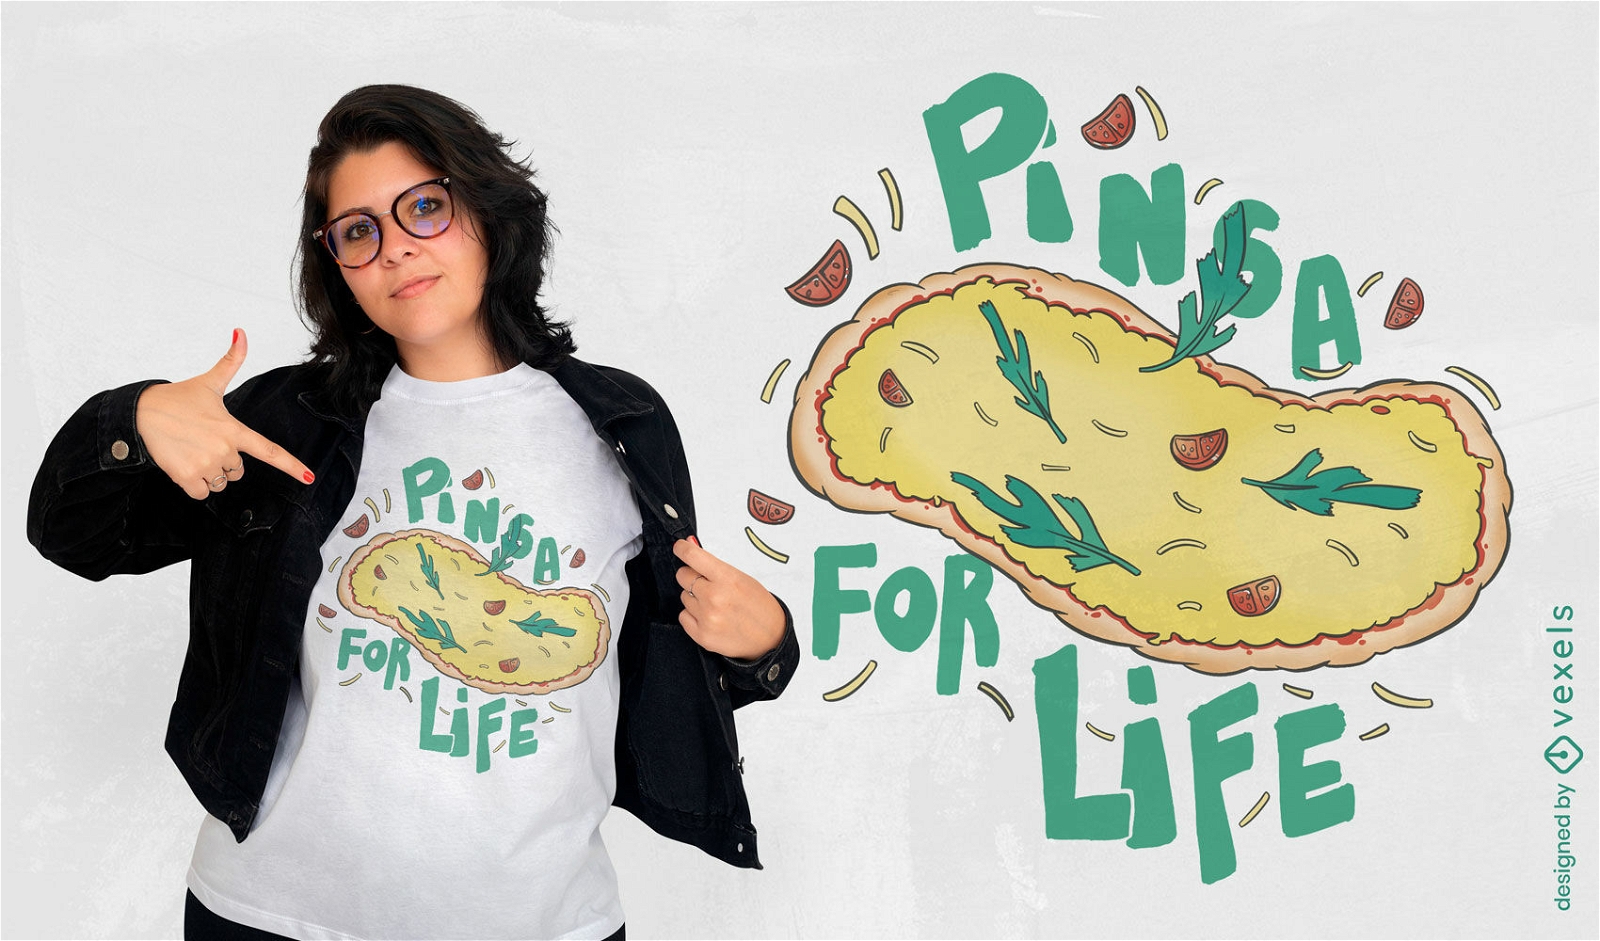 Pinsa roman food tasty t-shirt design